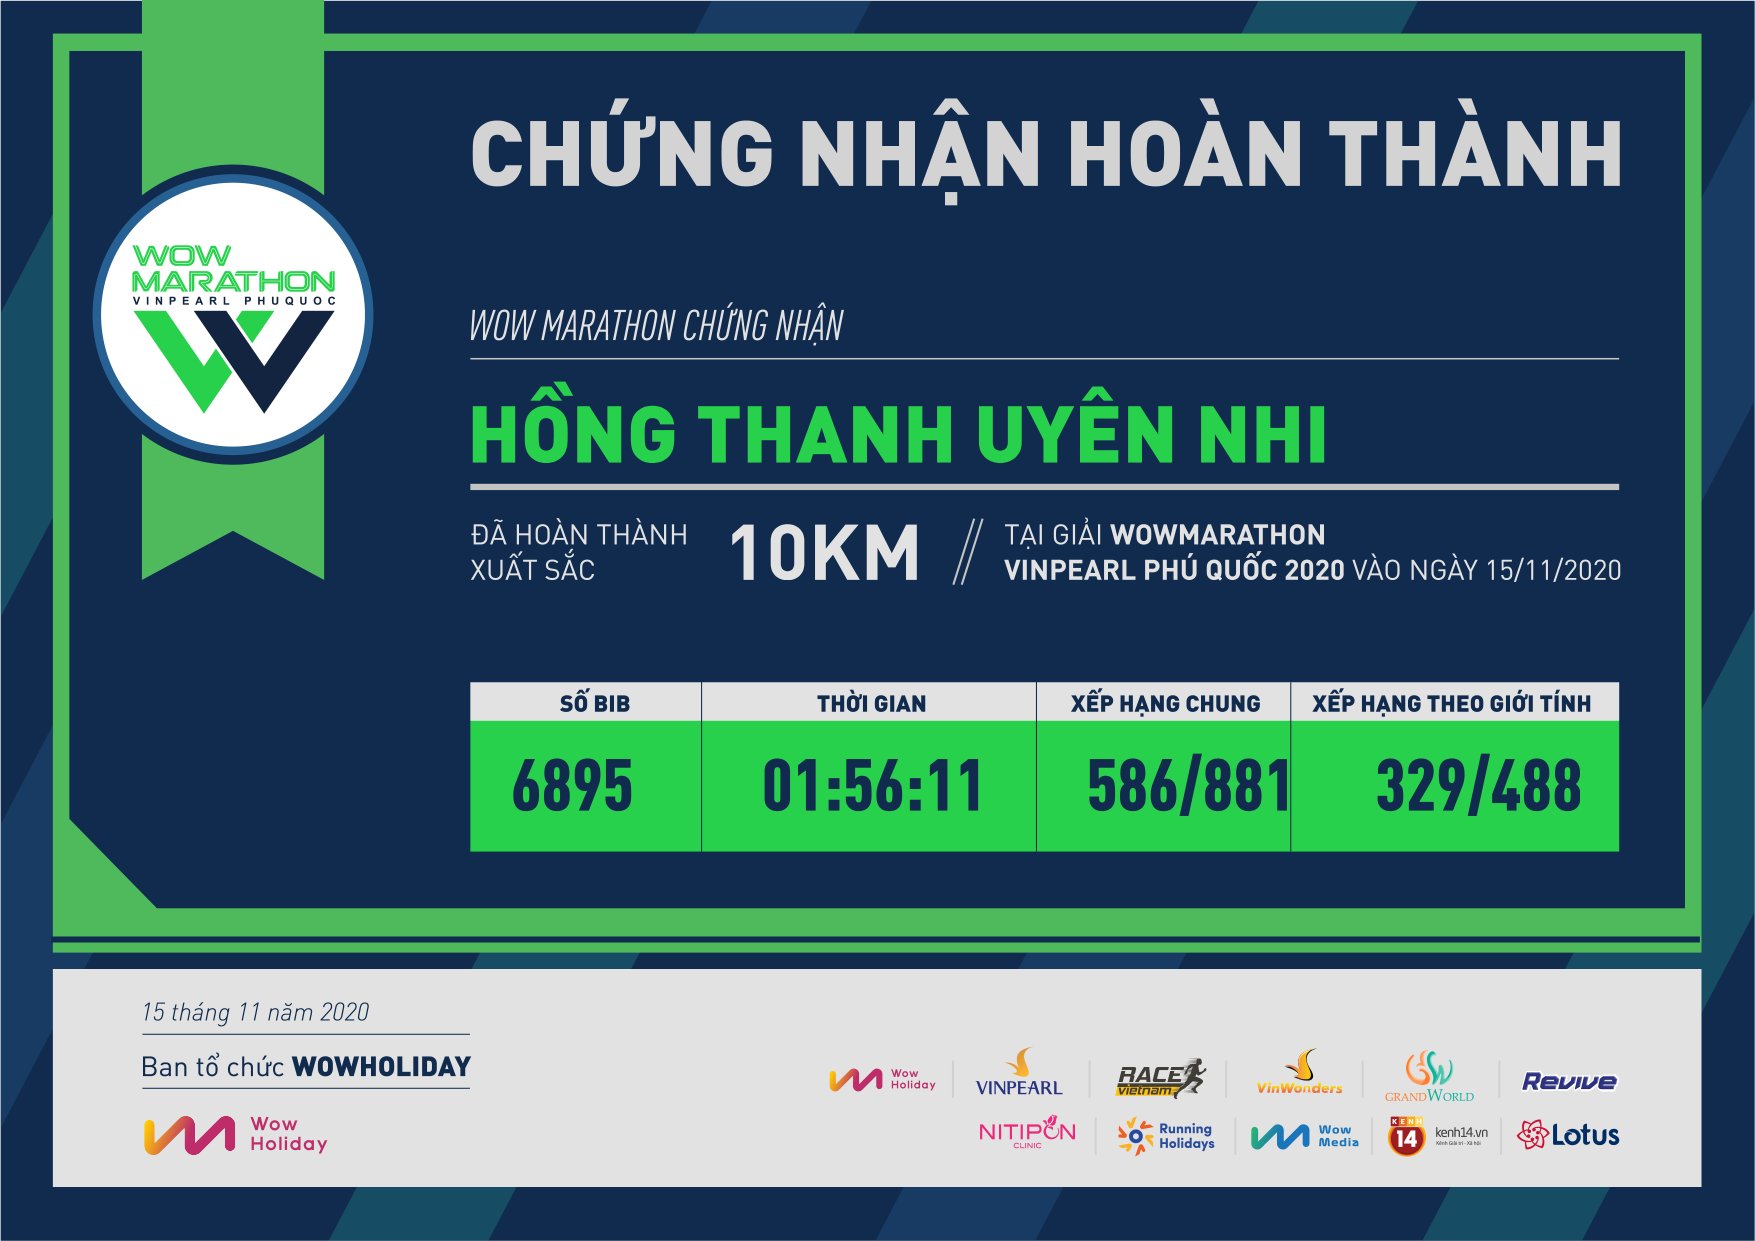 6895 - Hồng Thanh Uyên Nhi